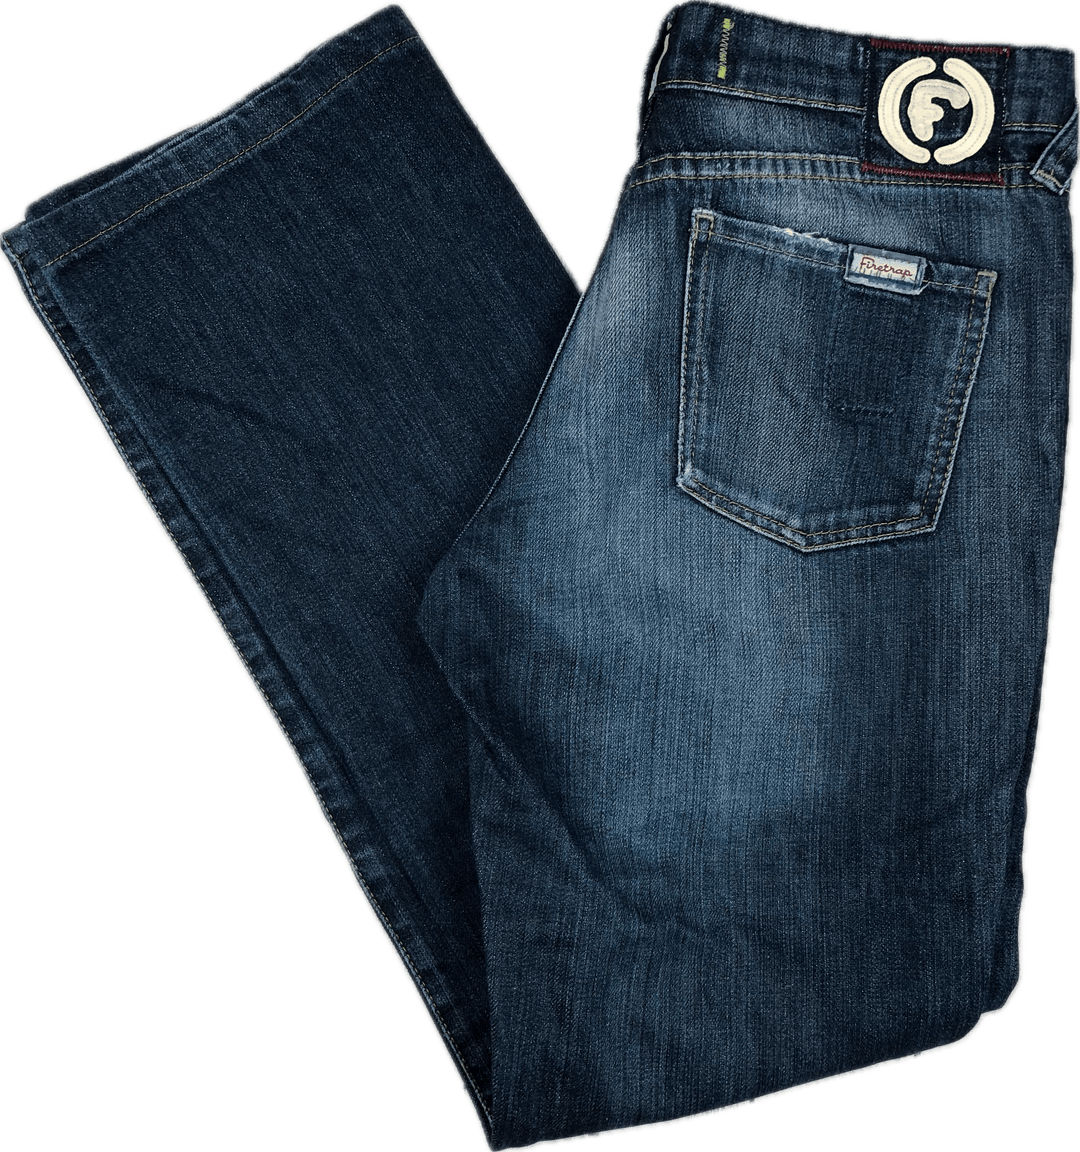 Firetrap Patch 'Slink Plus' Jeans - Size 27 - Jean Pool